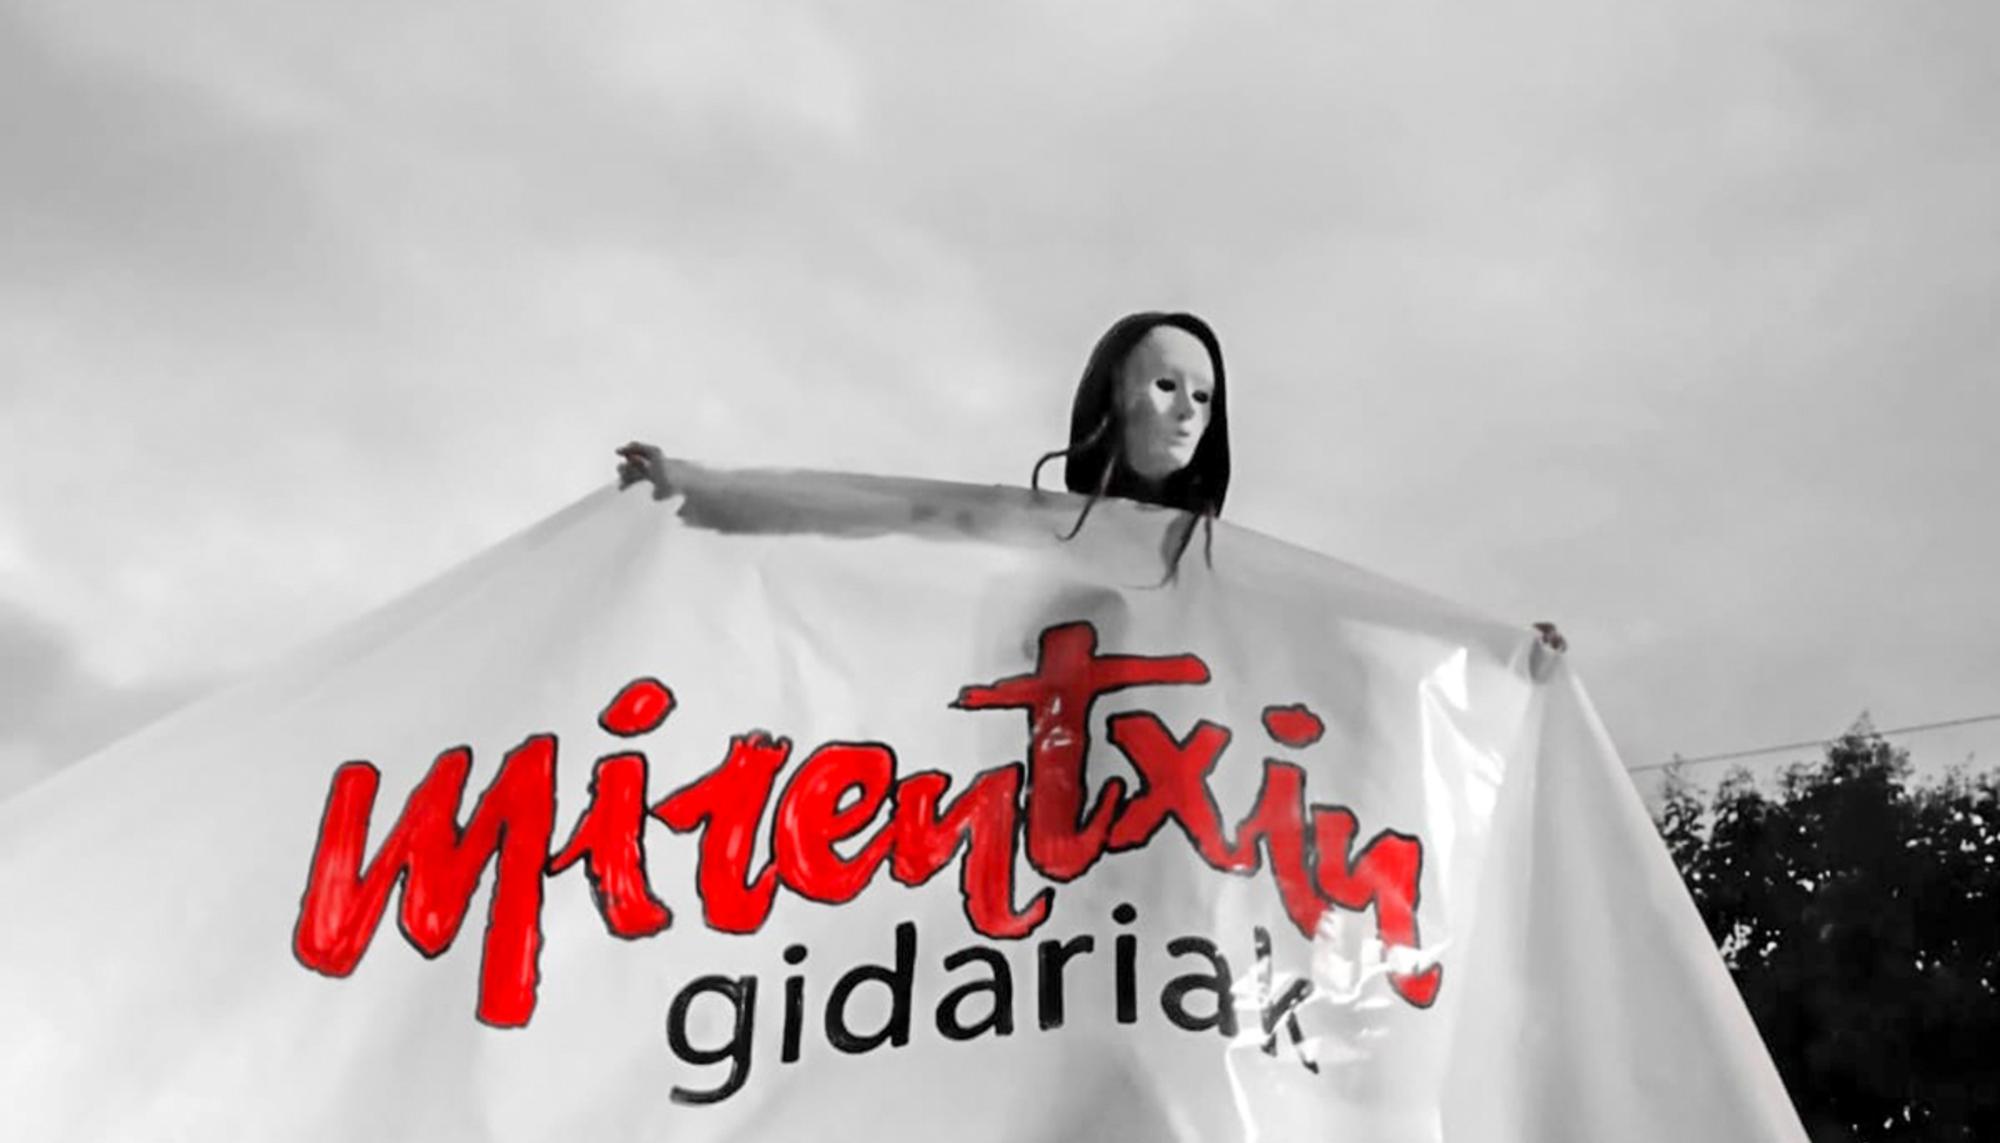 Mirentxin Gidariak